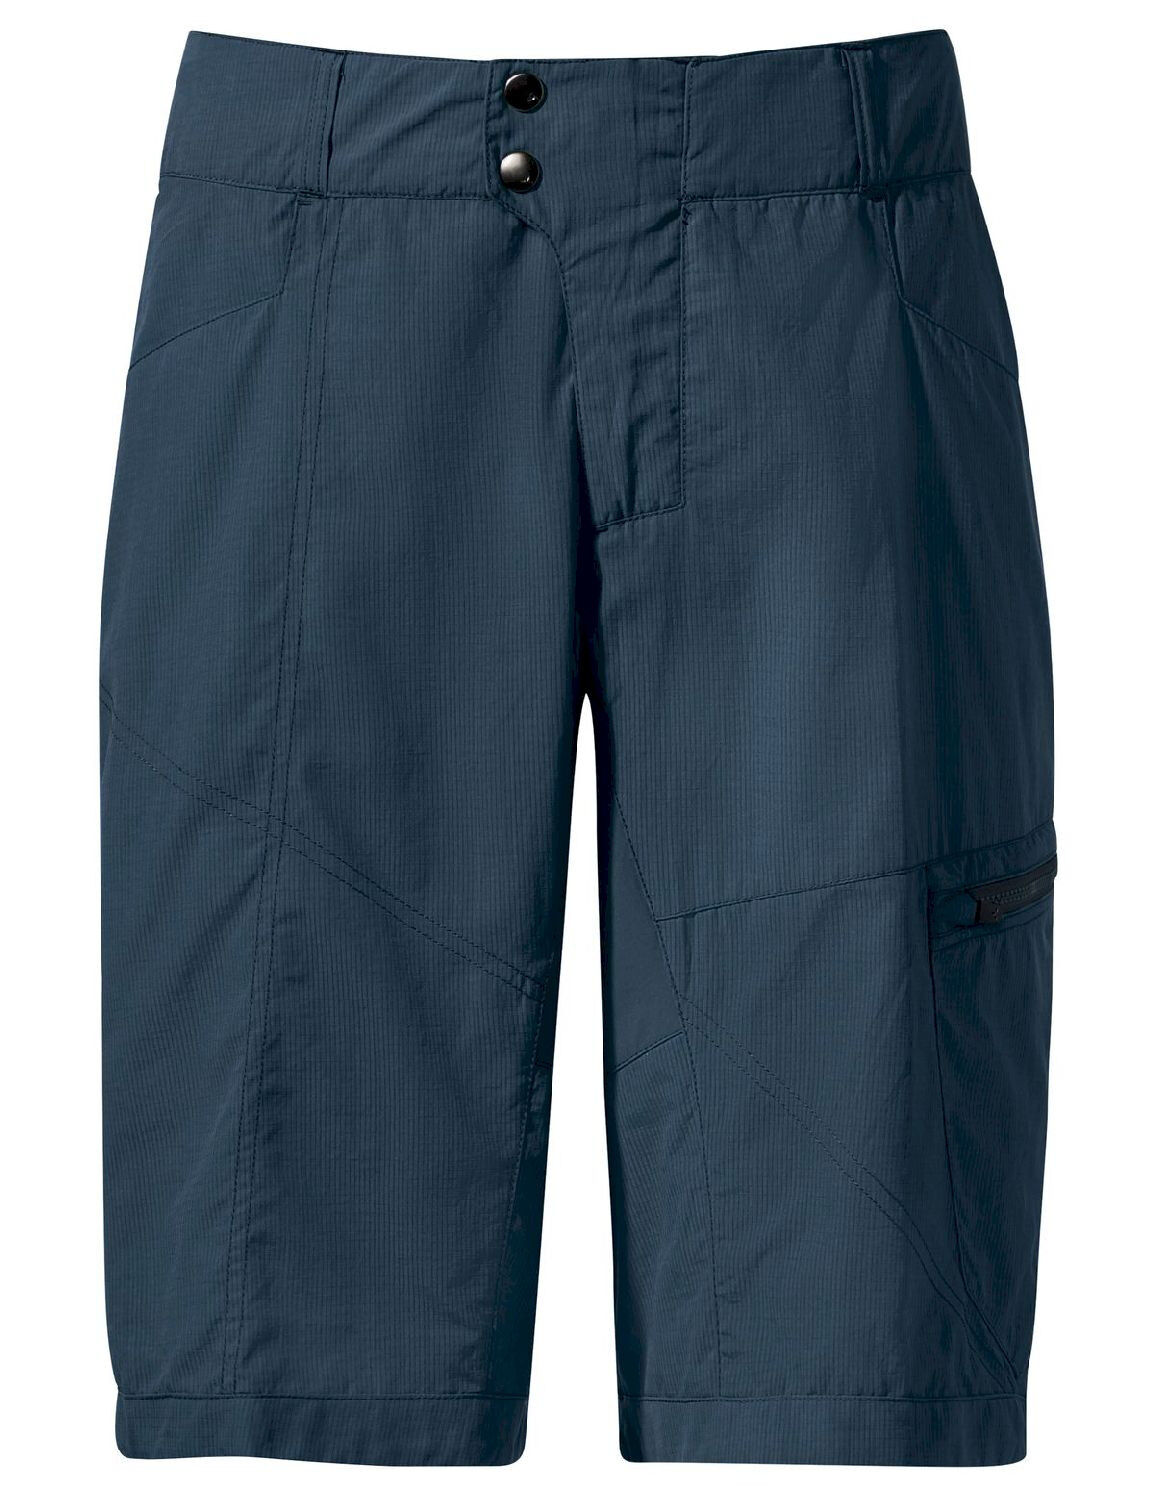 Vaude Tamaro Shorts - MTB shorts - Men's